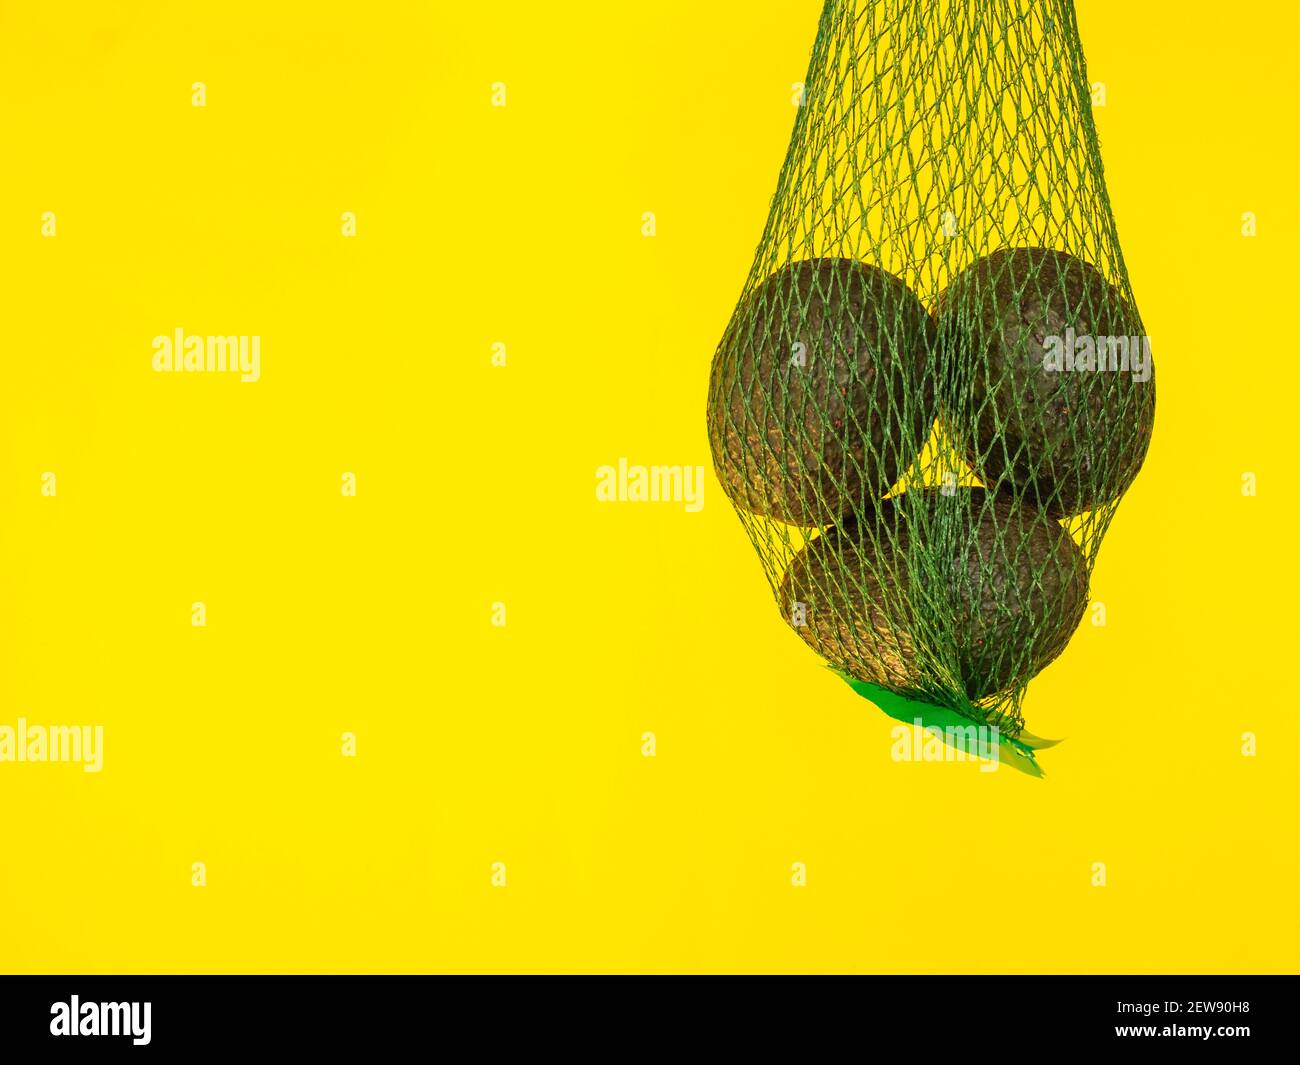 Aguacates en una red verde aislada y suspendida en el aire con un fondo amarillo en el estudio Foto de stock